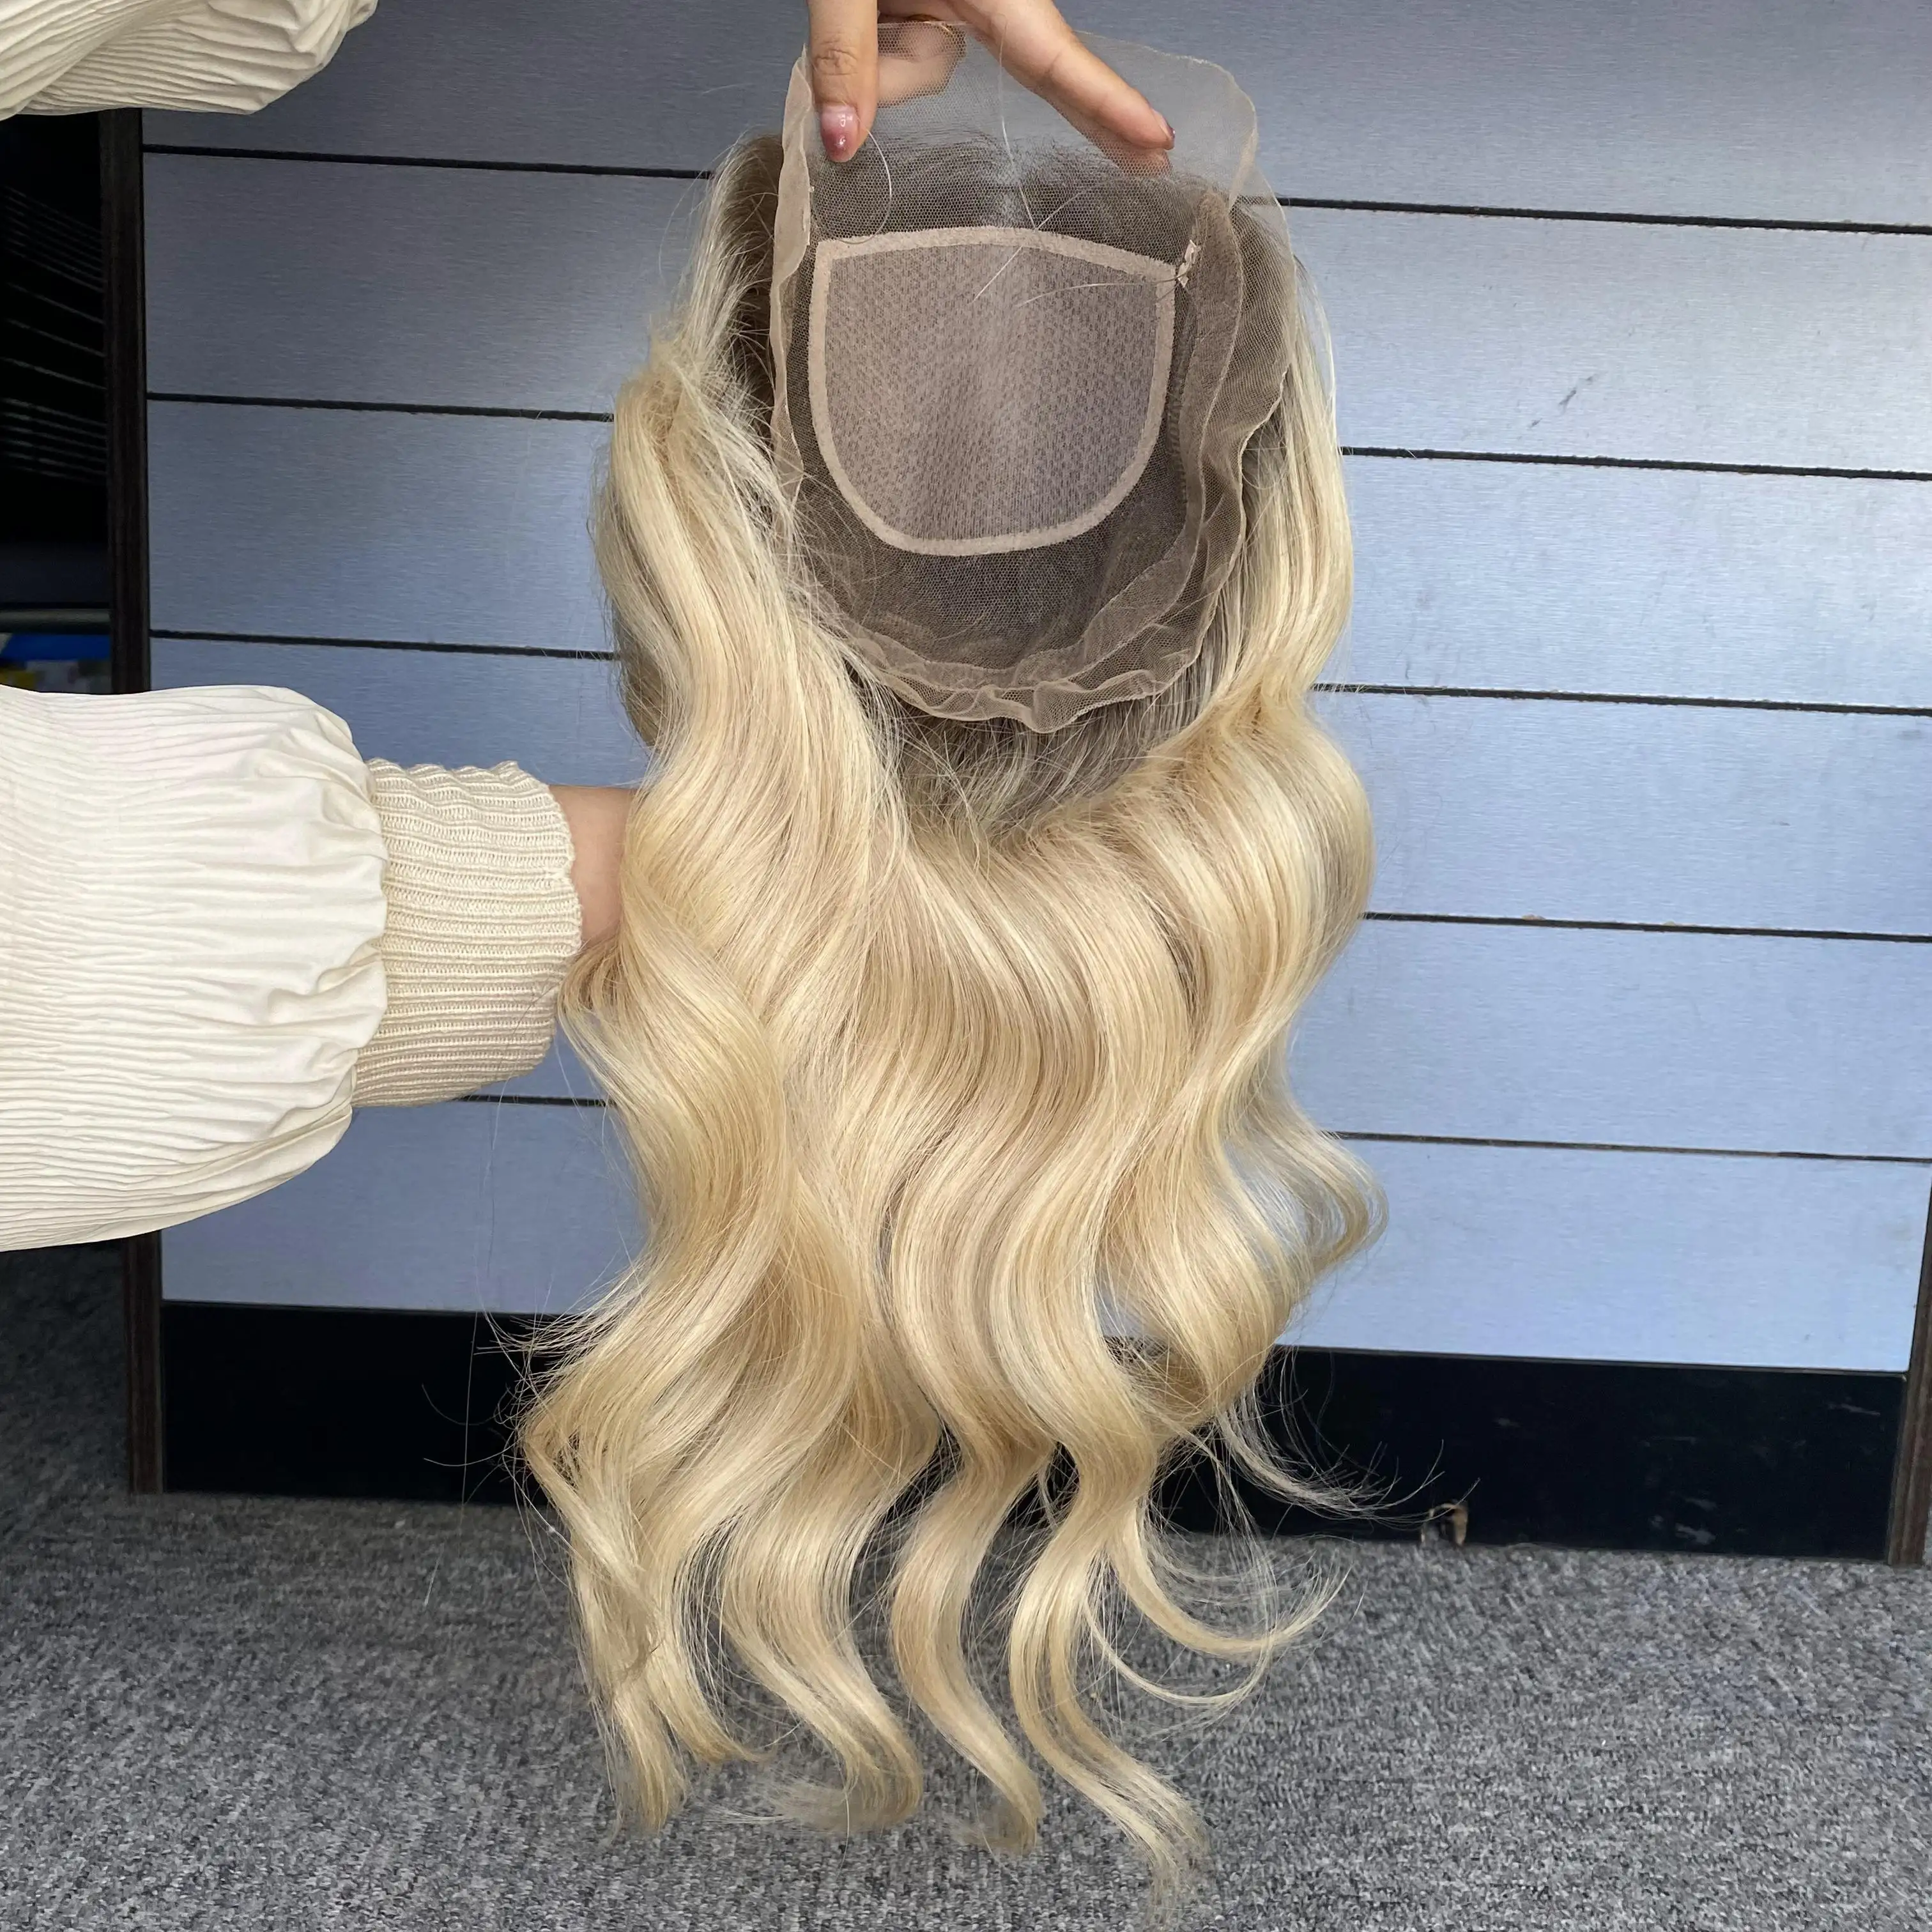 Wig rambut Virgin desain baru 8x8 Wig Mini Topper rambut manusia untuk wanita solusi penambah volume rambut rontok 4x4 Topper dasar sutra